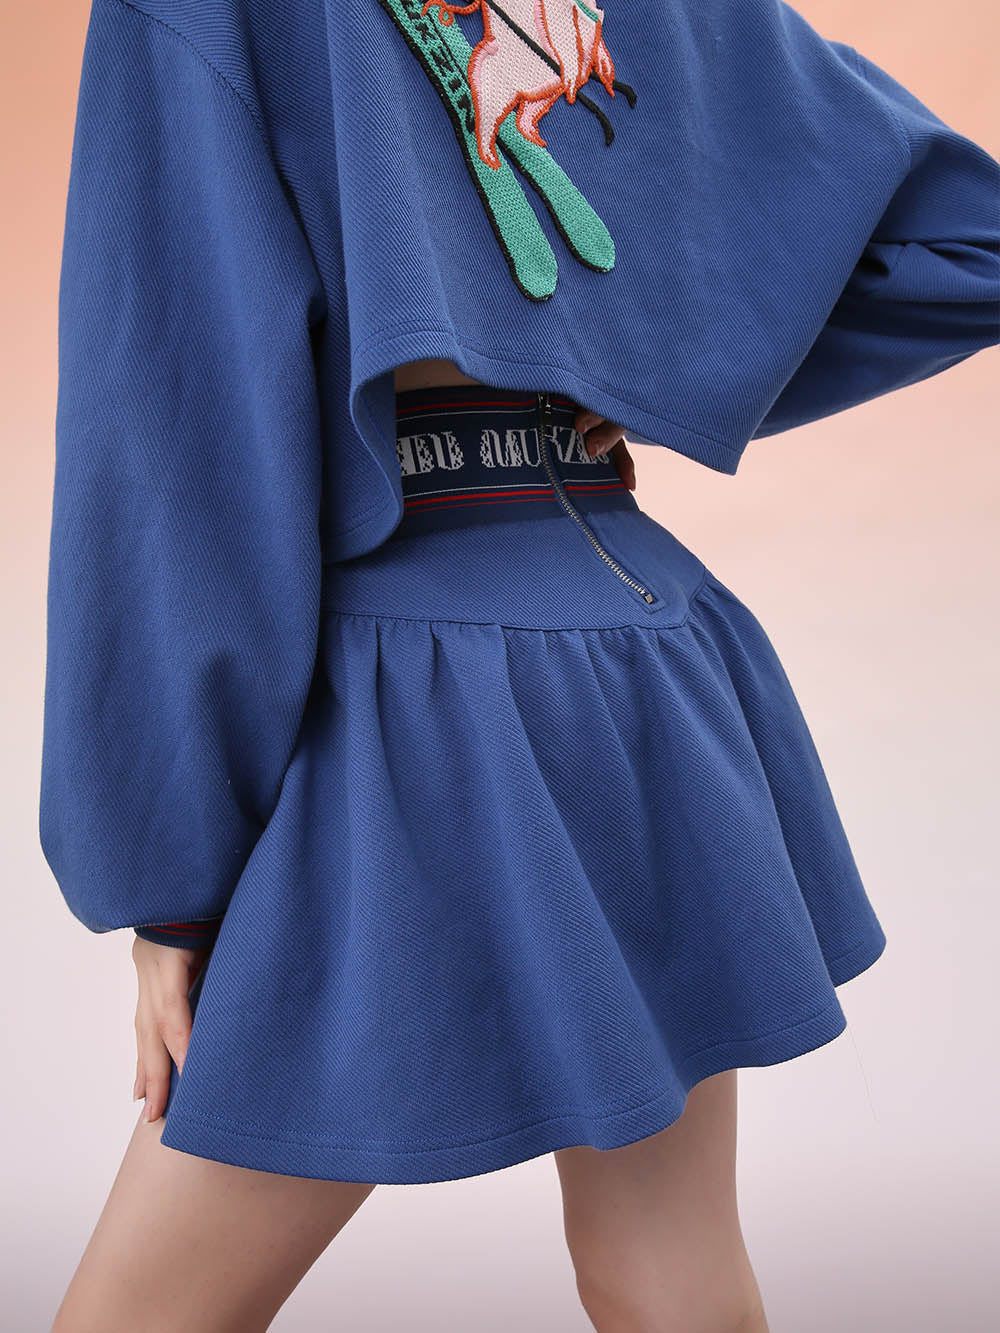 MUKZIN Short Knitted Blue Skirt